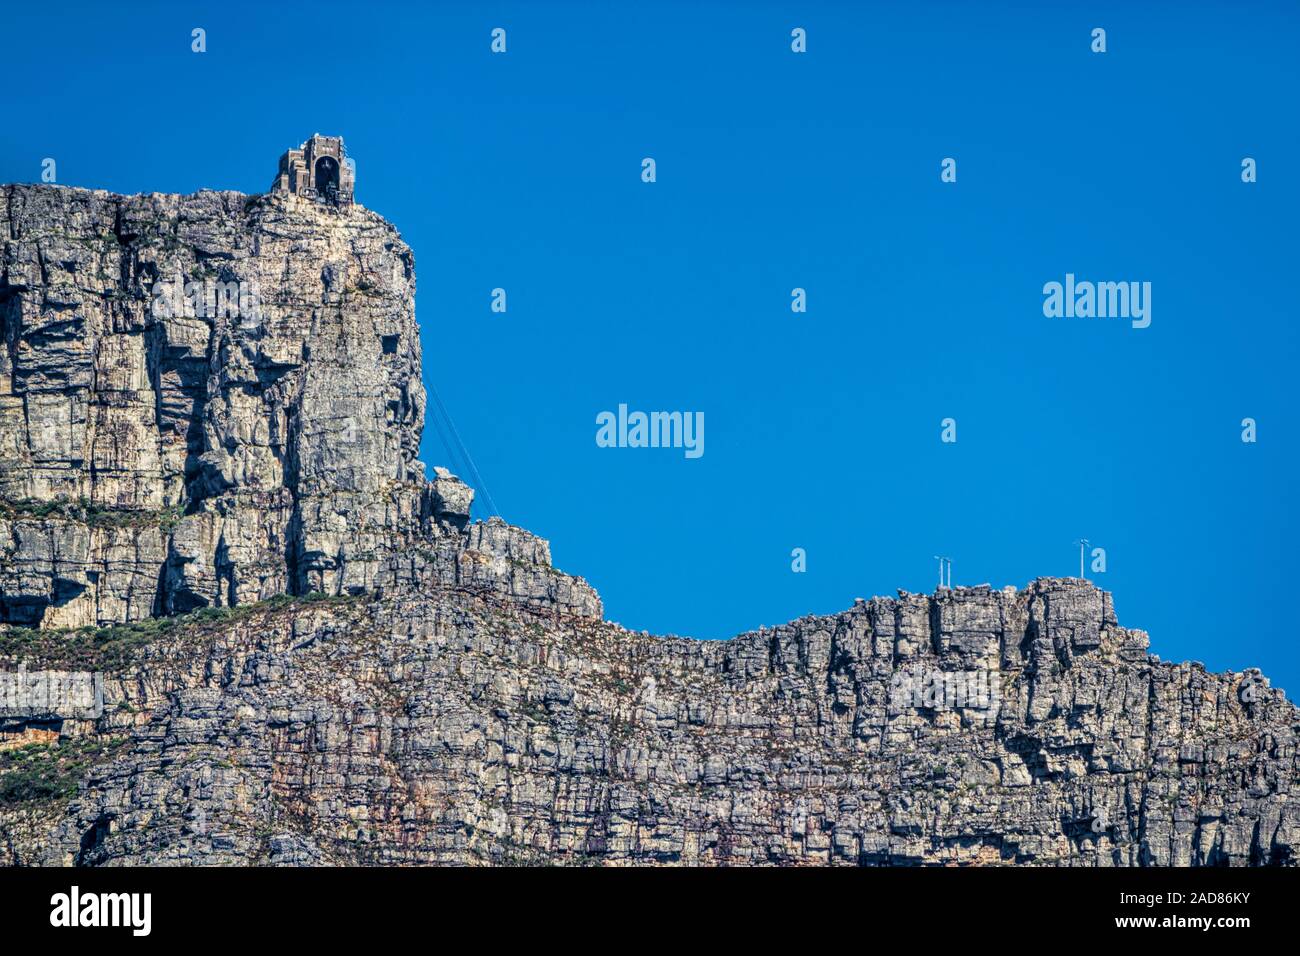 Le Cap, Table Mountain téléphérique avec Banque D'Images